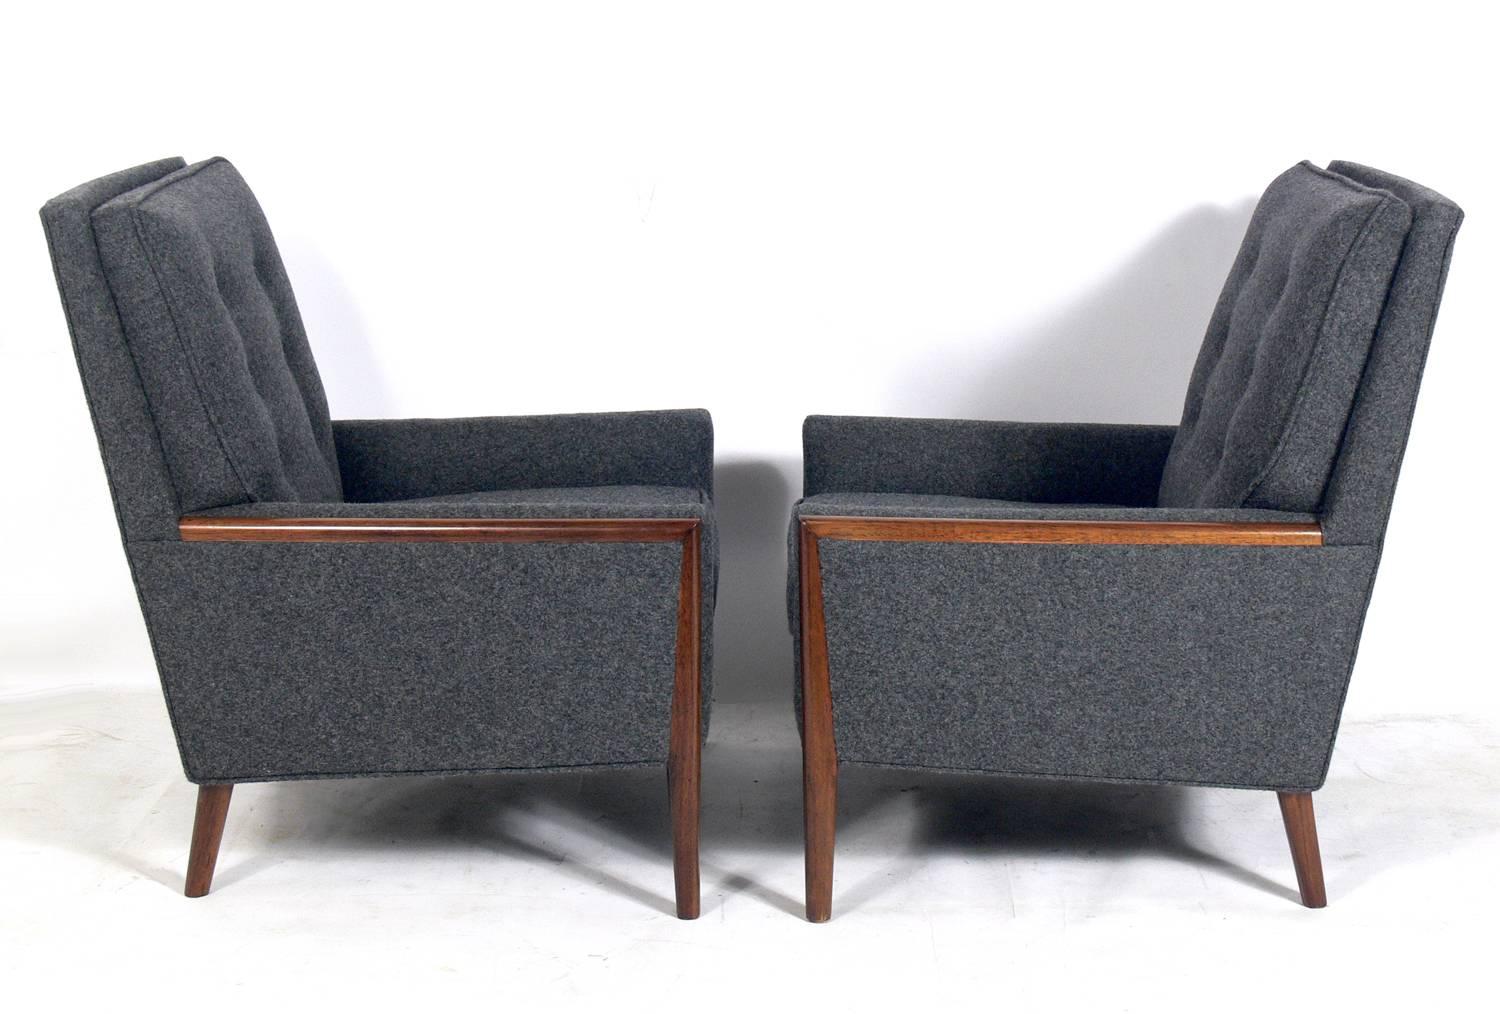 Paire de chaises longues modernes, dans le style de T.H. Robsjohn-Gibbings, américain, vers les années 1960. Ils ont été retapissés dans une tapisserie gris anthracite et la garniture en noyer a été nettoyée et huilée.